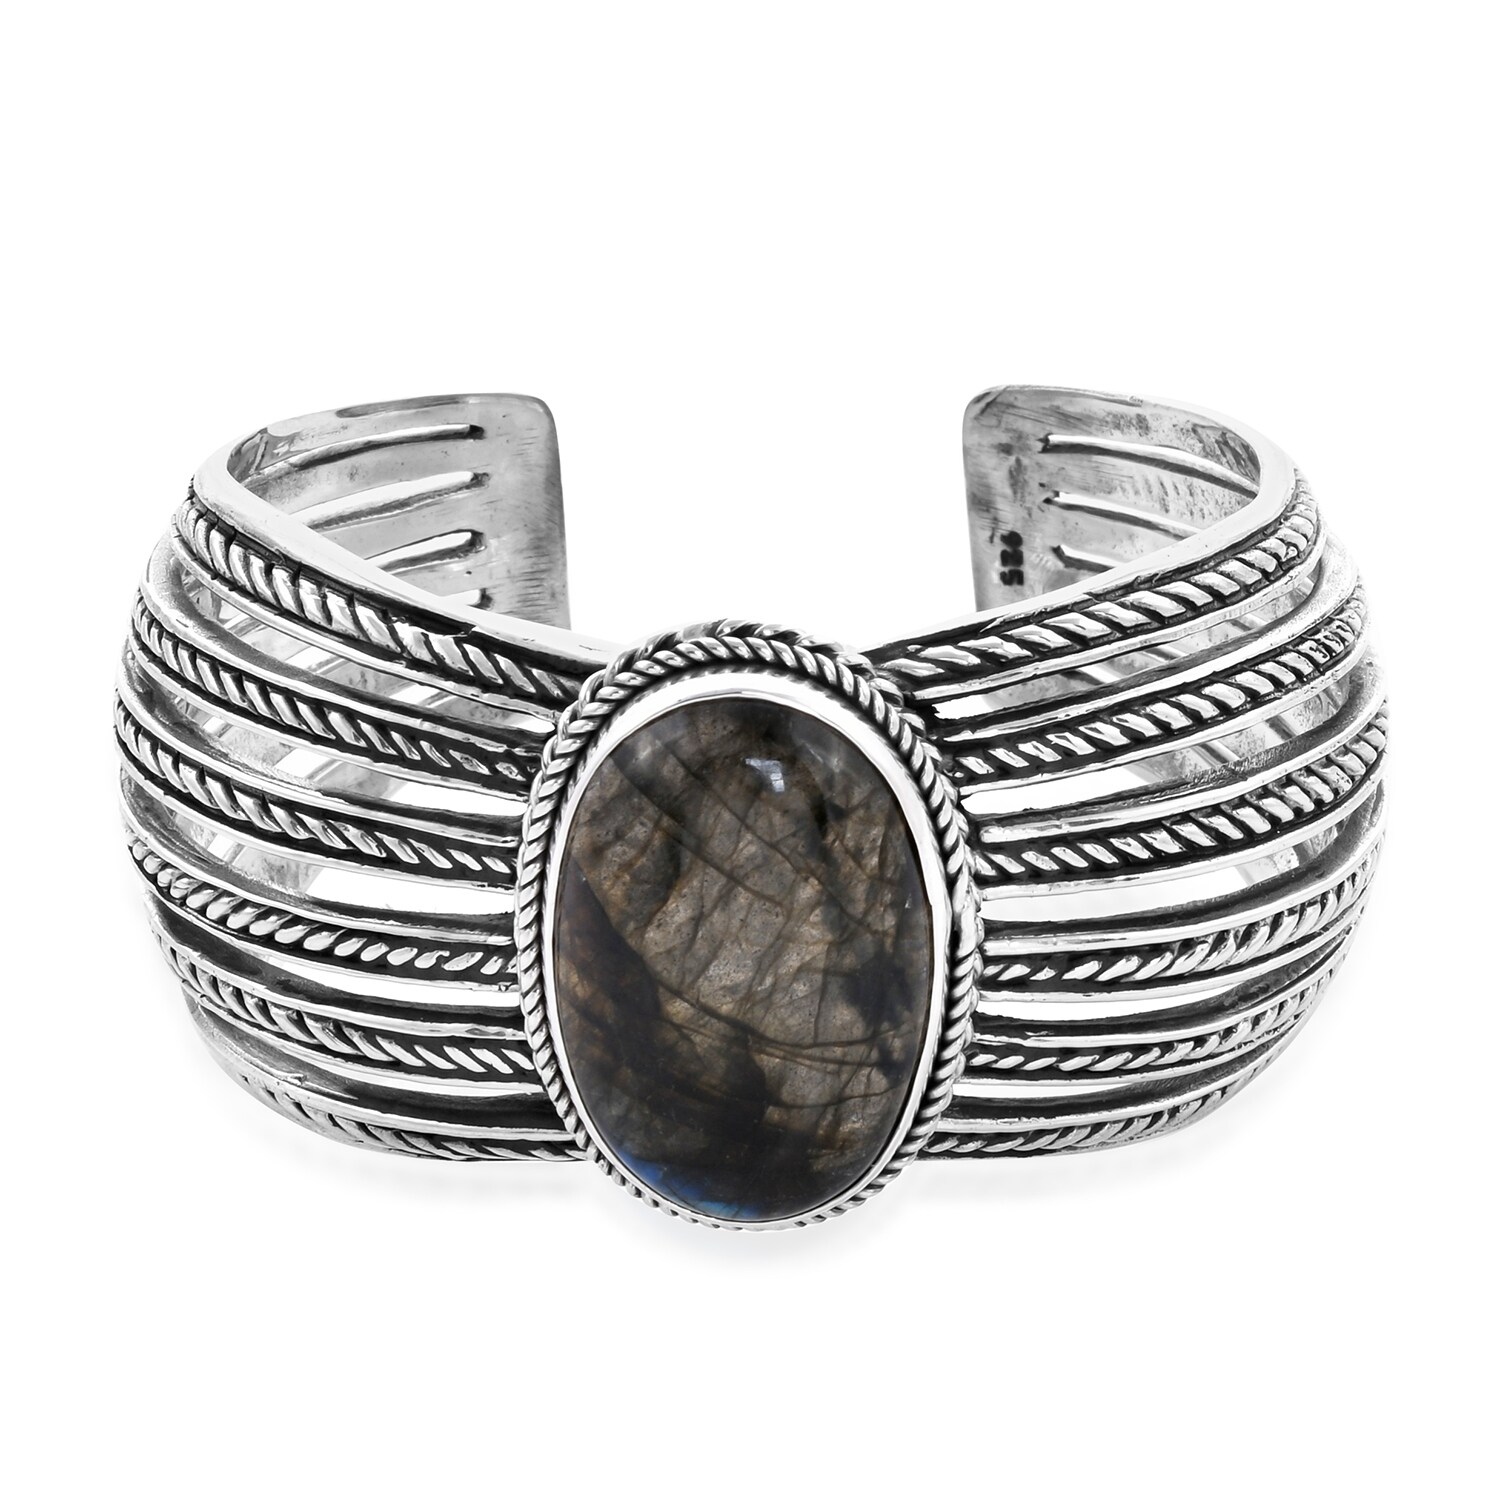 Details about   Labradorite Gemstone 925 Sterling Silver Designer Cuff Bangle Bracelet 